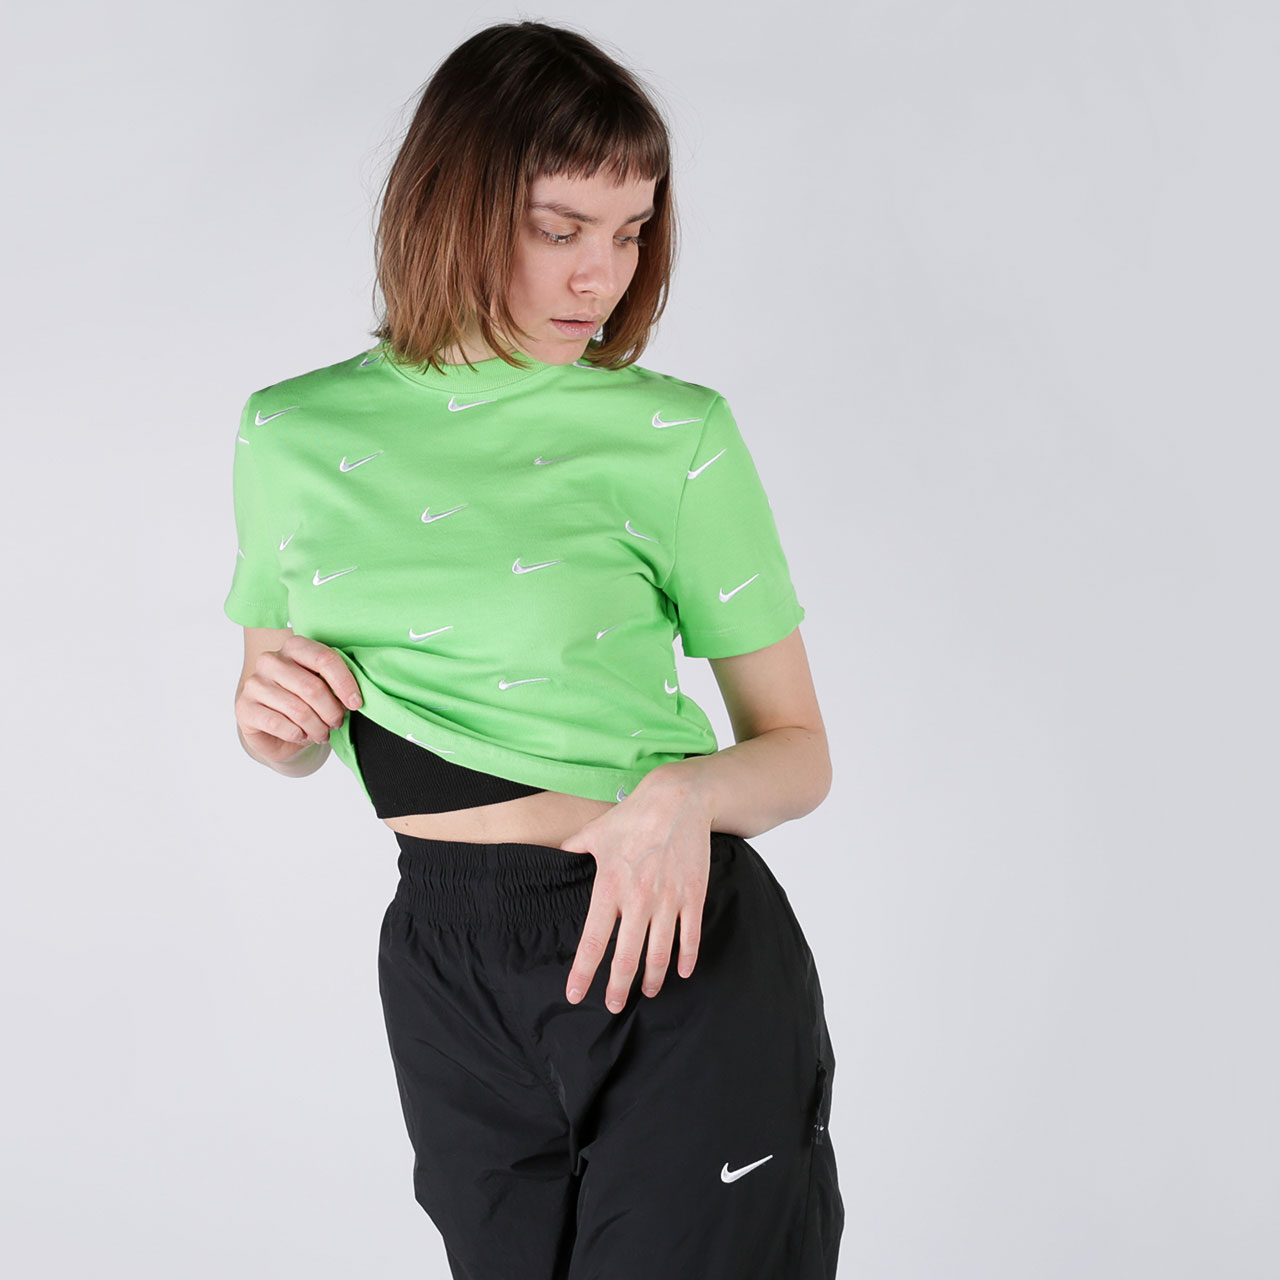 женская зеленая футболка Nike Swoosh Logo T-Shirt CK4092-378 - цена, описание, фото 2